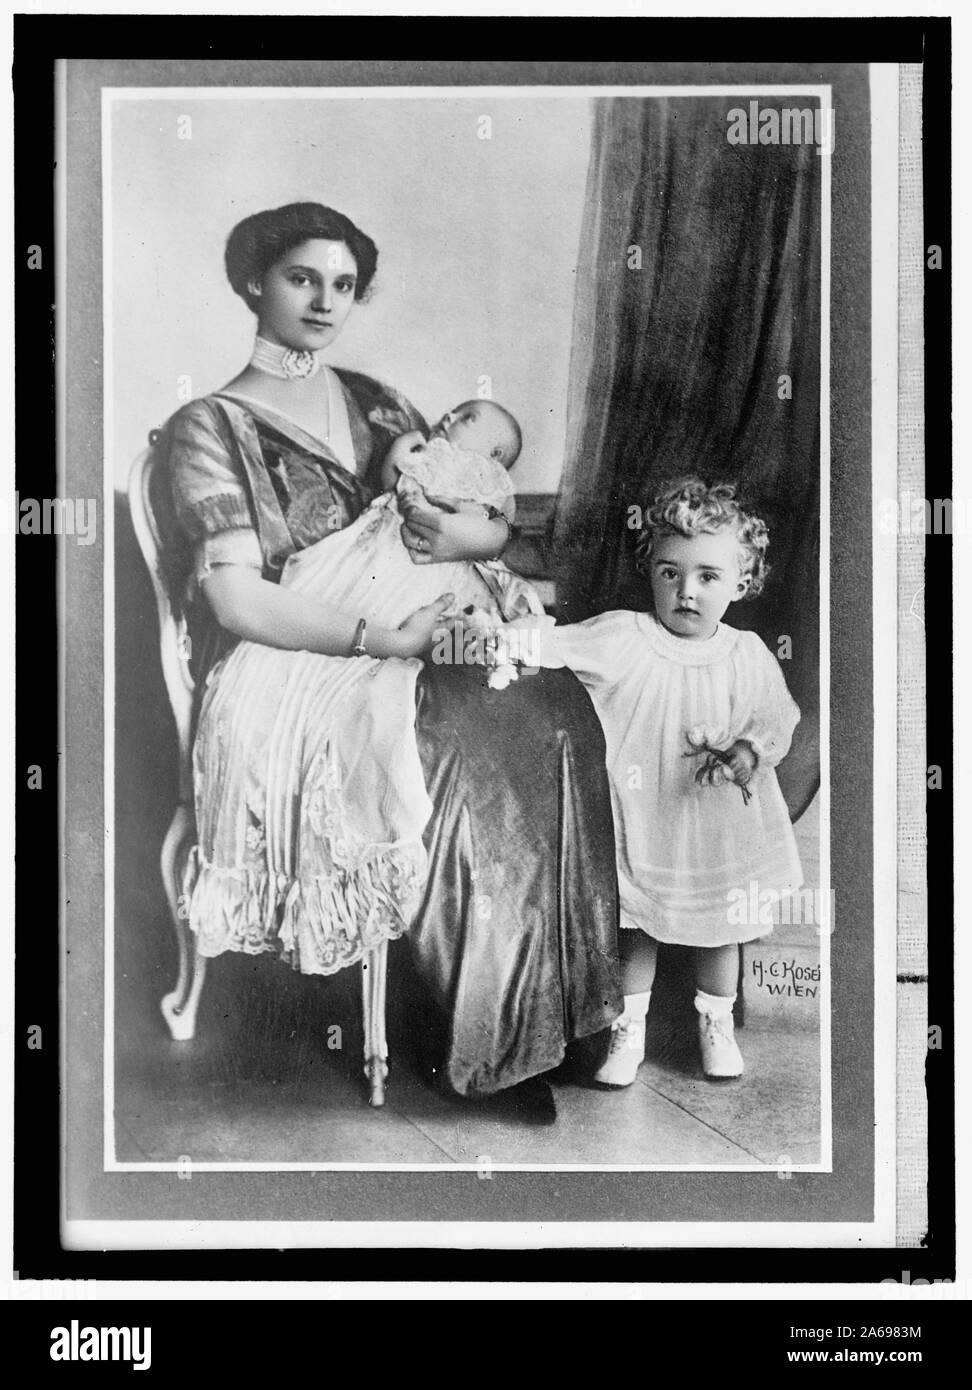 ZITA, S.A.R. L'Imperatrice d'Austria, nato nel 1892, la principessa di Borbone e Parma. Con il figlio, otto, e neonati Foto Stock